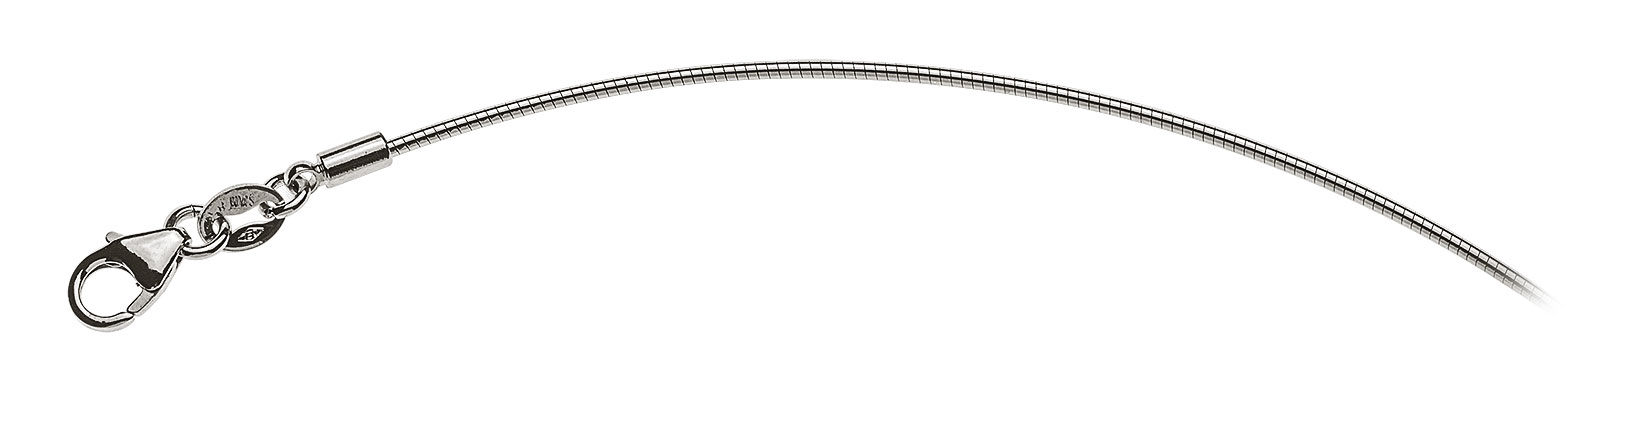 AURONOS Prestige White Gold 18K Omega Necklace 45cm 1.0mm